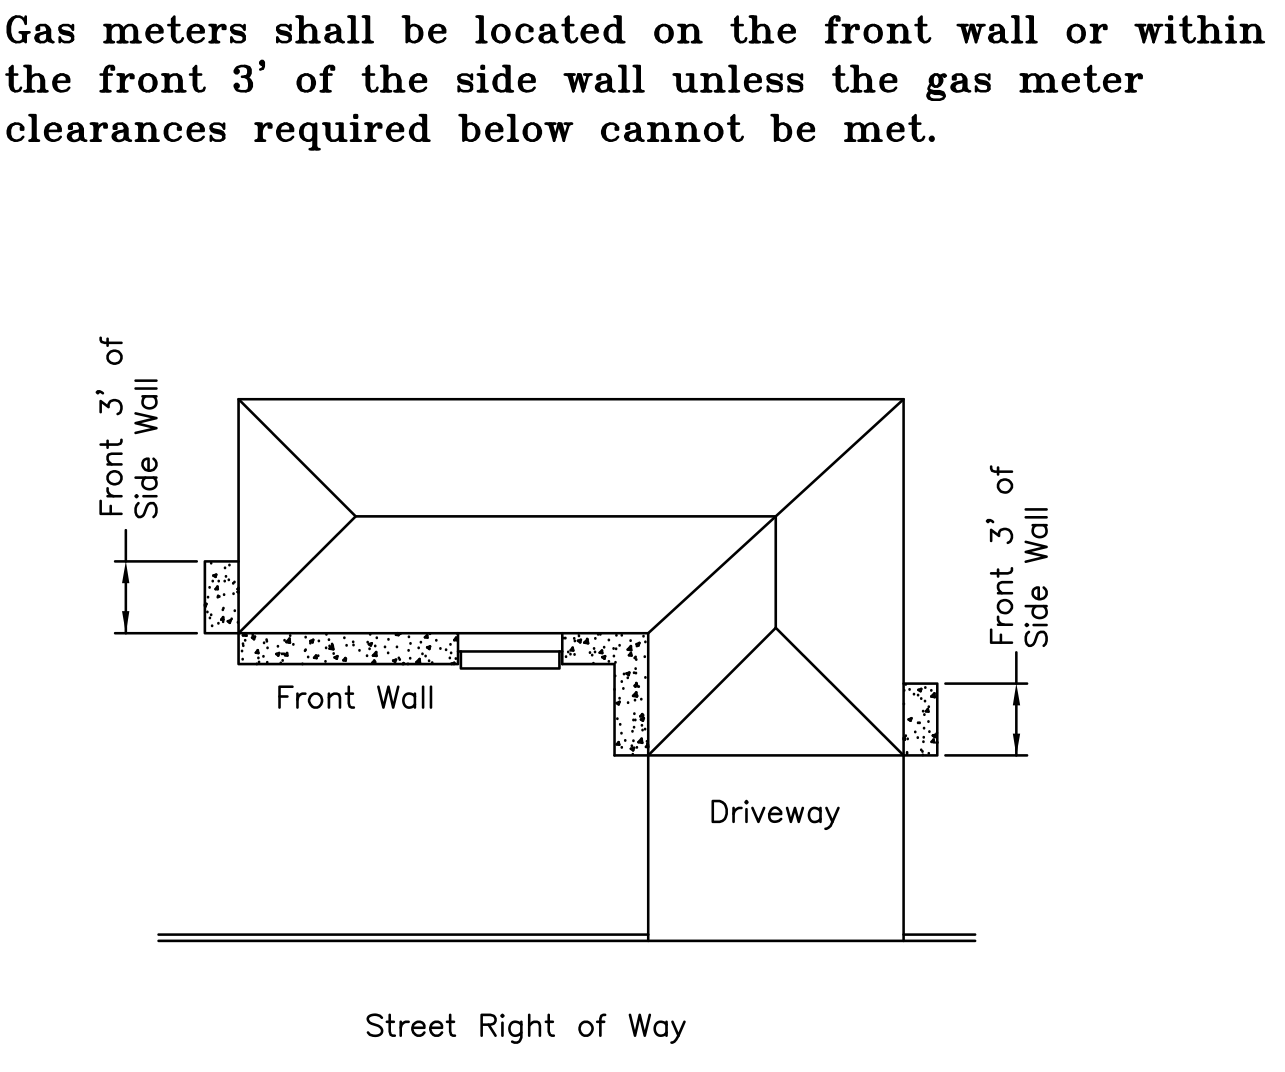 інструкції щодо розташування газових лічильників